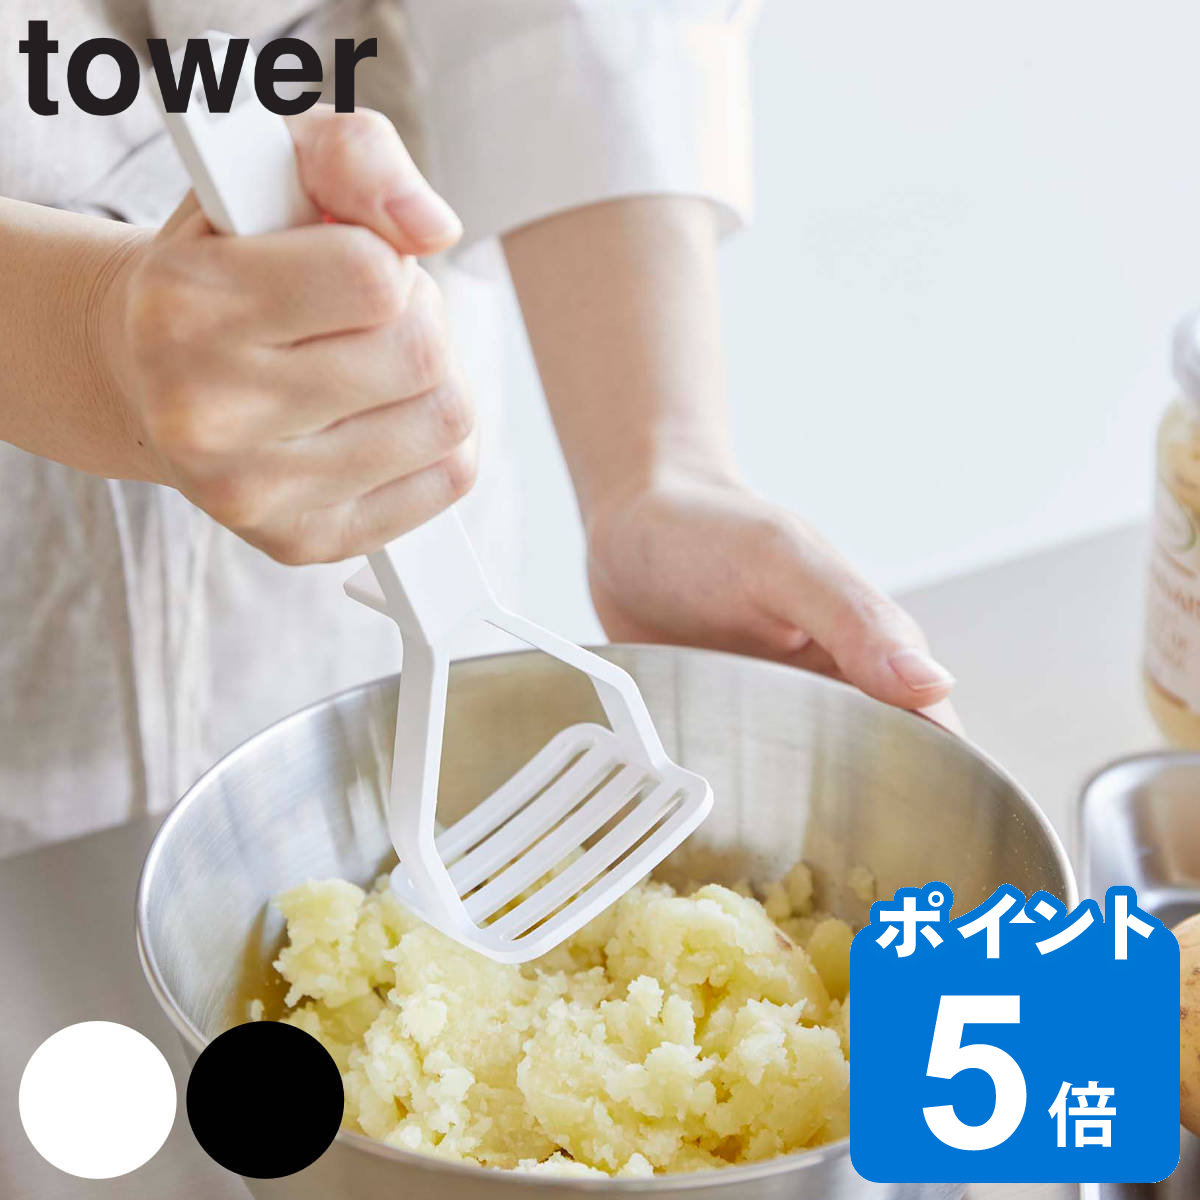 山崎実業 tower シリコーンハンドル ポテトマッシャー タワー